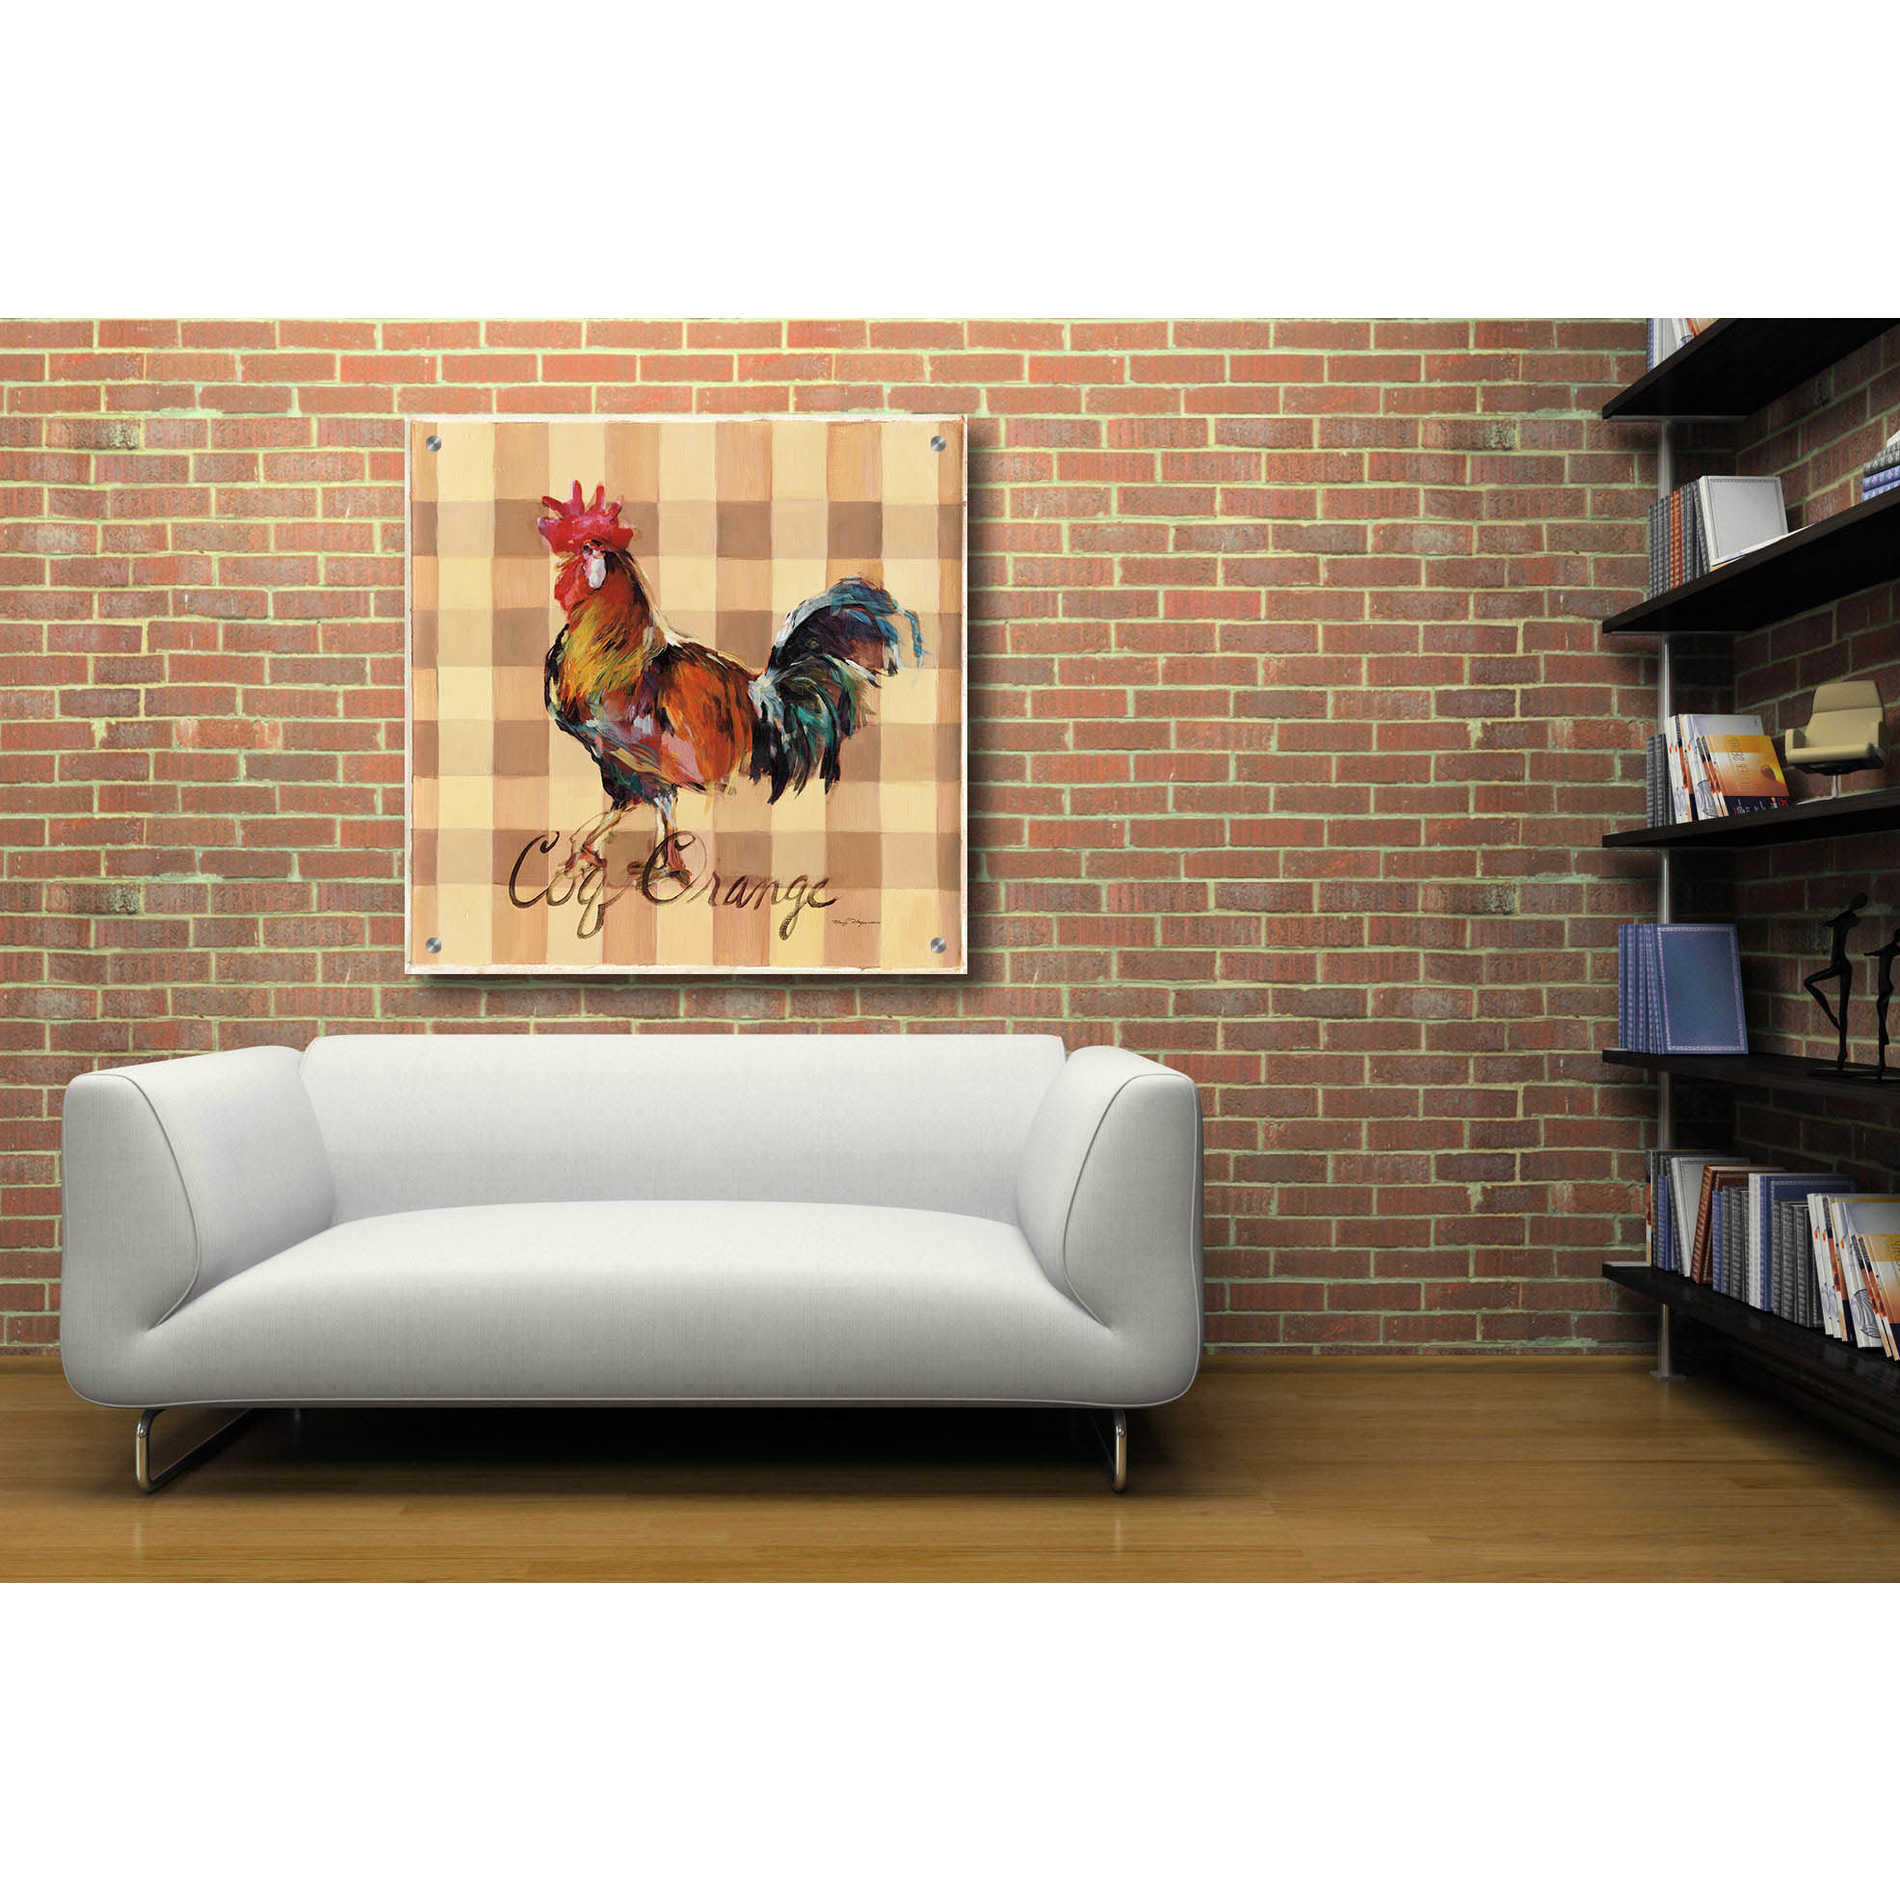 Epic Art 'Coq Orange' by Marilyn Hageman, Acrylic Glass Wall Art,36x36